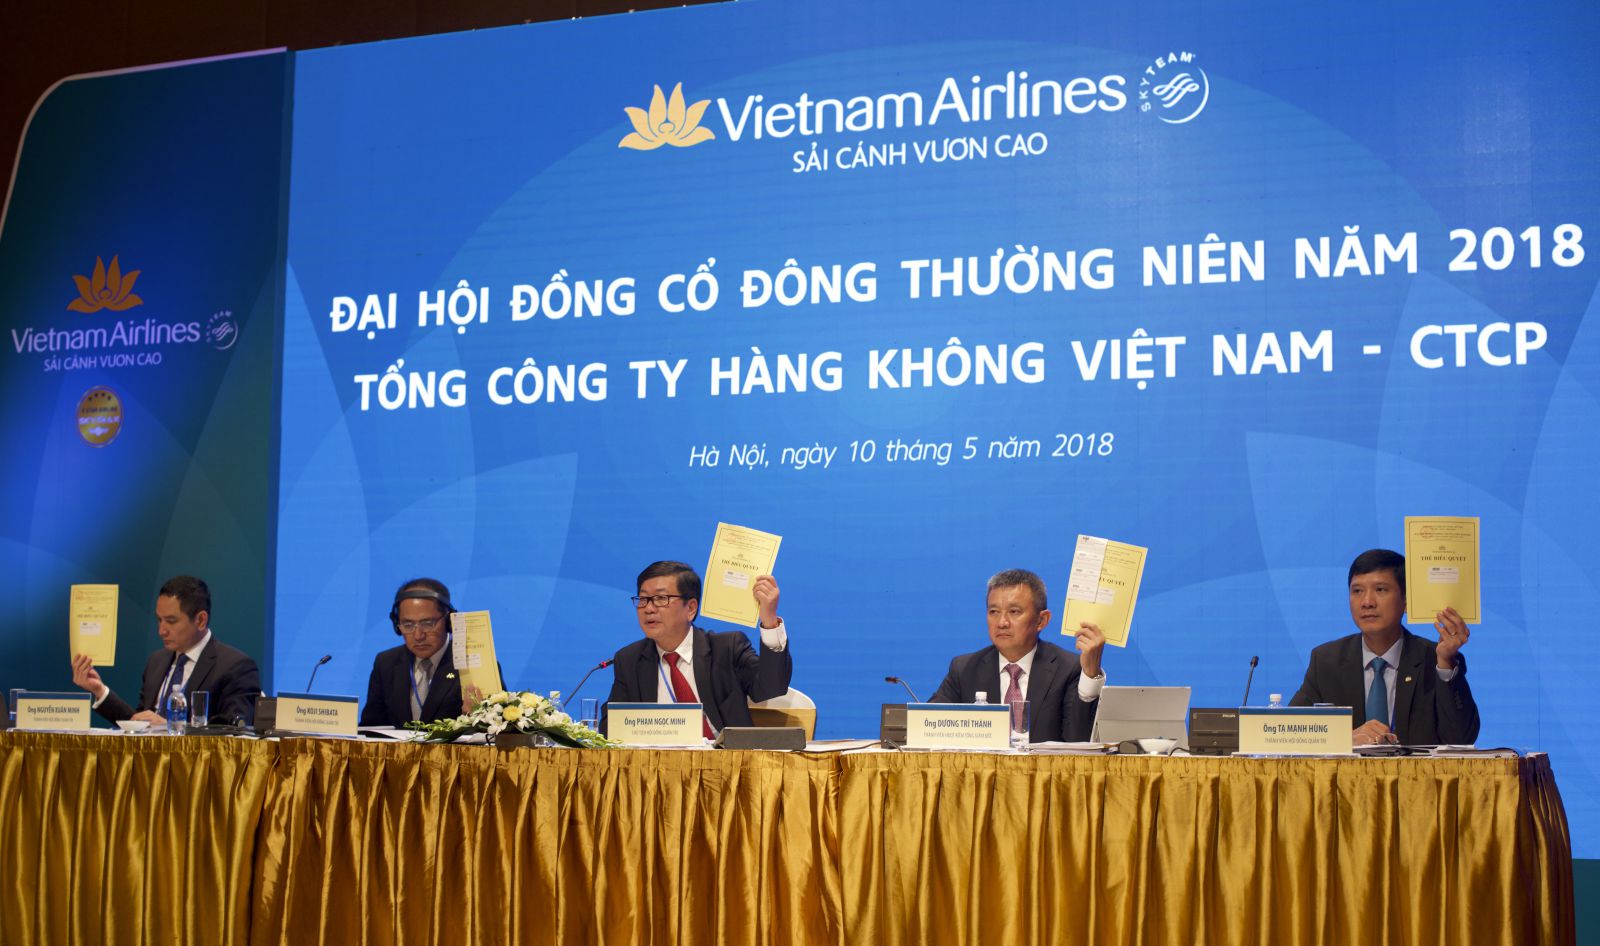 Tại ĐHĐCĐ, các cổ đông đã thông qua chủ trương chuyển sàn giao dịch cổ phiếu của Vietnam Airlines sang niêm yết trên sàn HOSE trong năm 2018. 